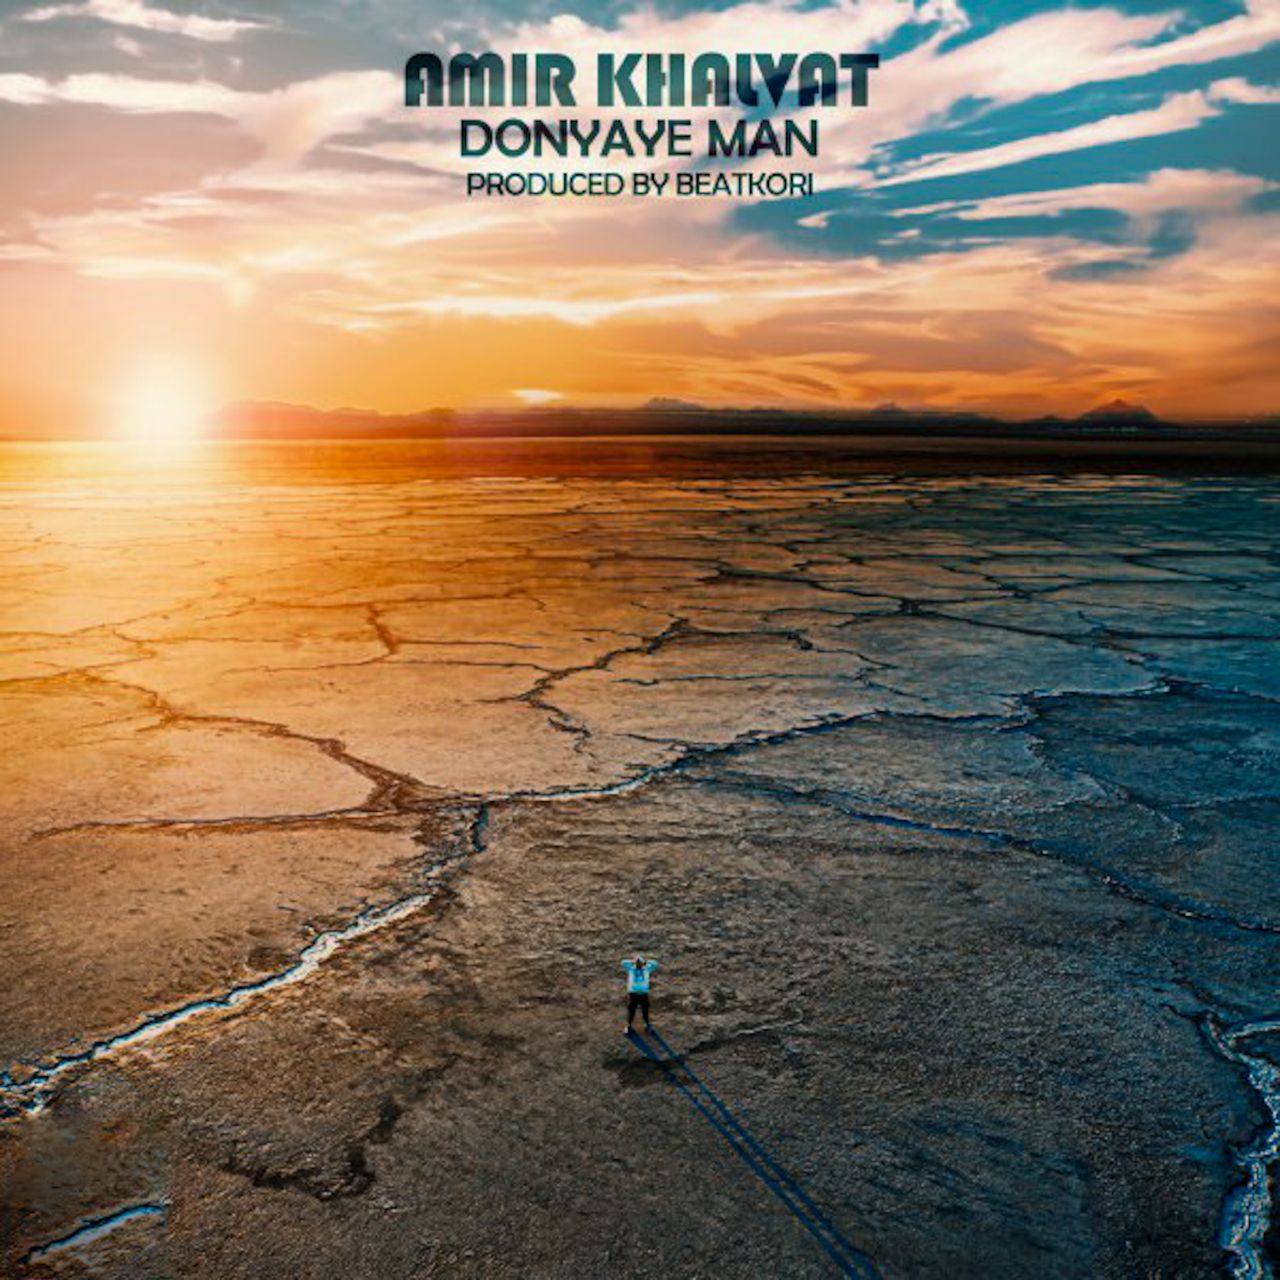  دانلود آهنگ جدید امیرخلوت - دنیای من | Download New Music By Amir Khalvat - Donyaye Man